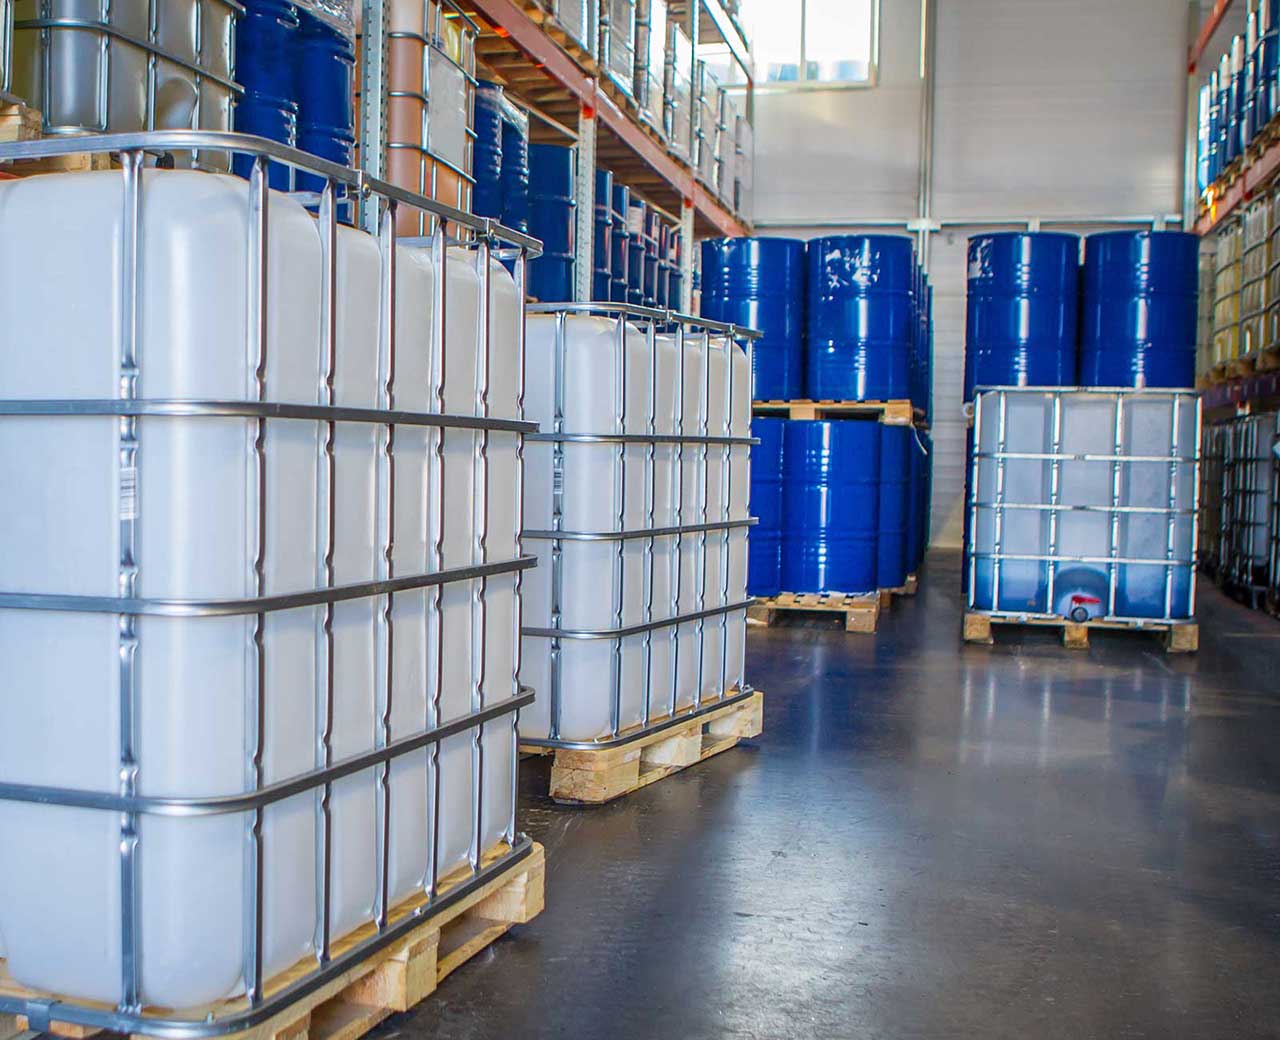 Chemical bins in warehouse